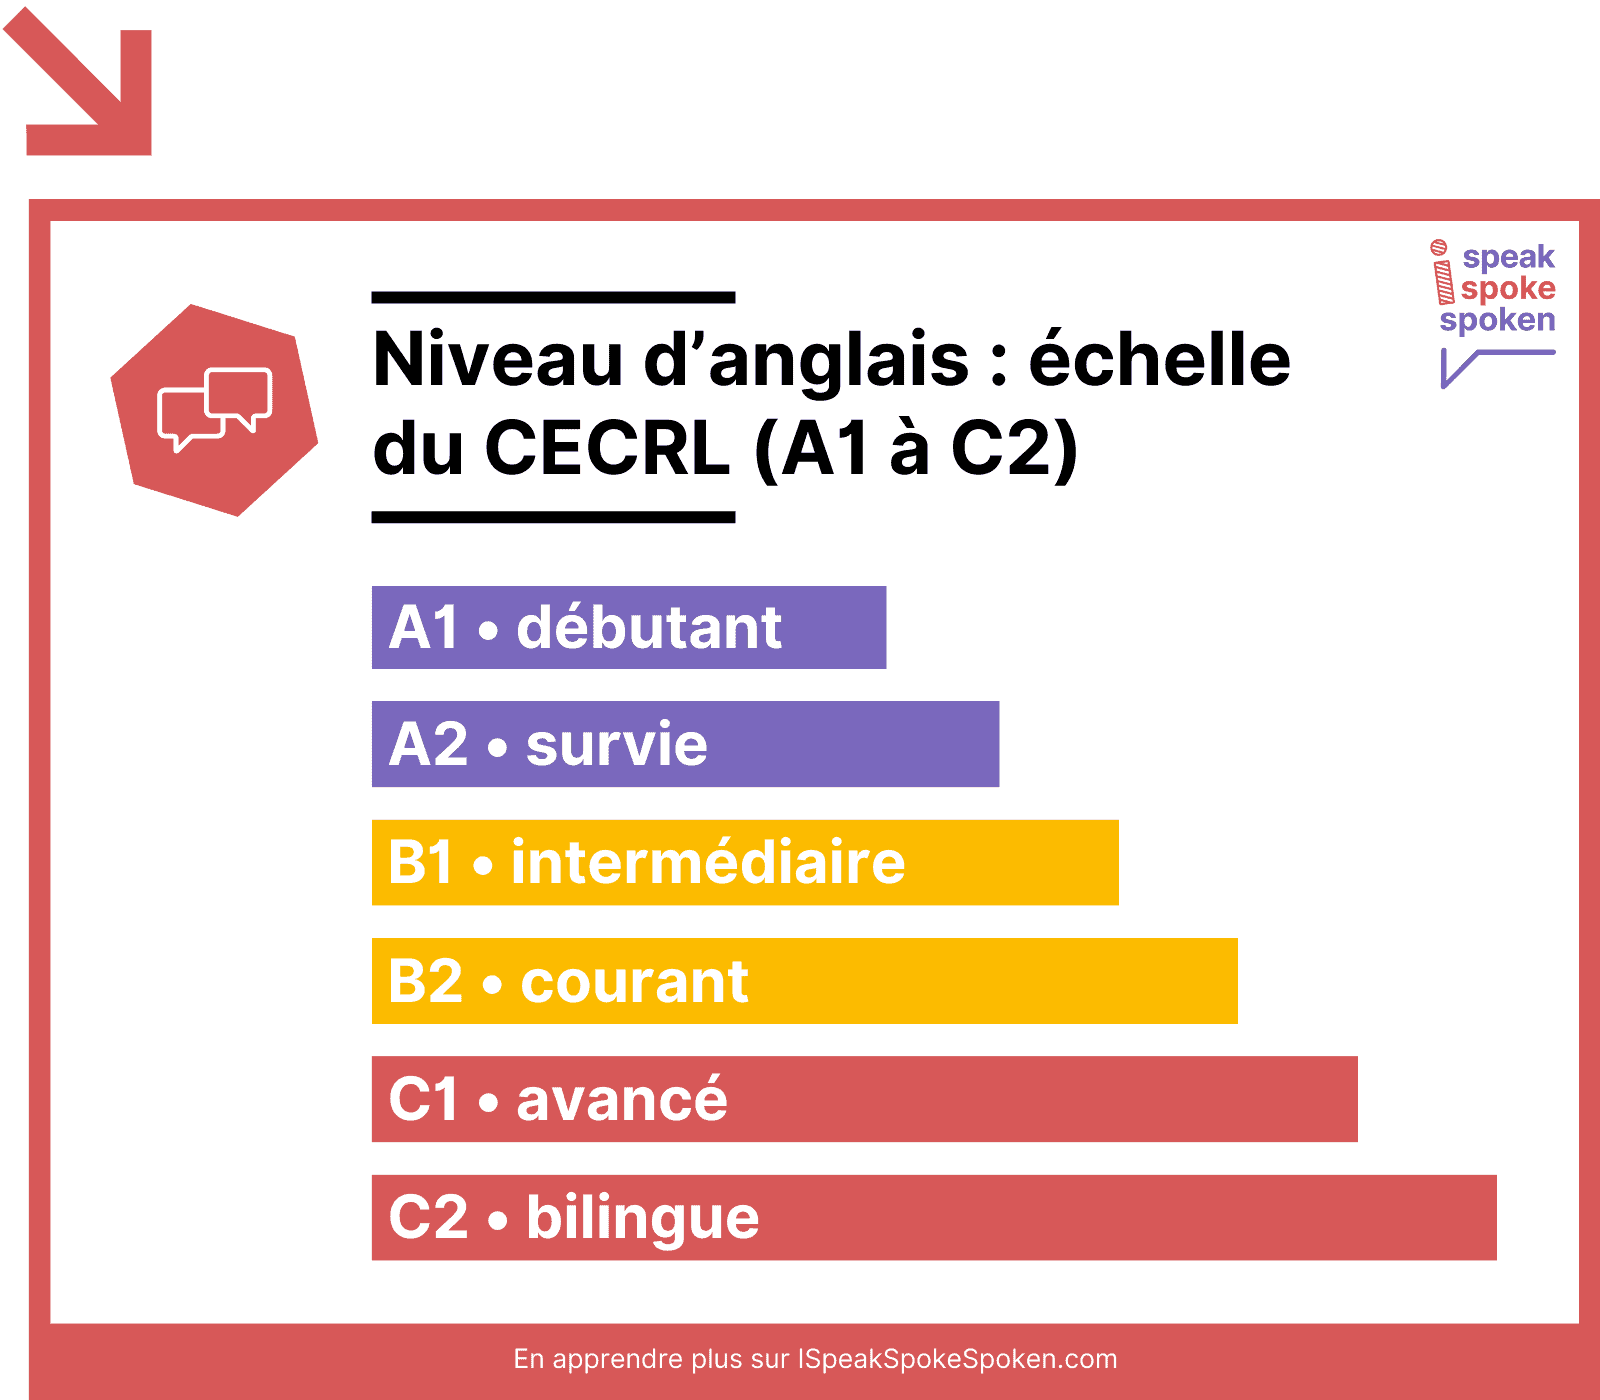 Les différents niveaux d’anglais du CECRL